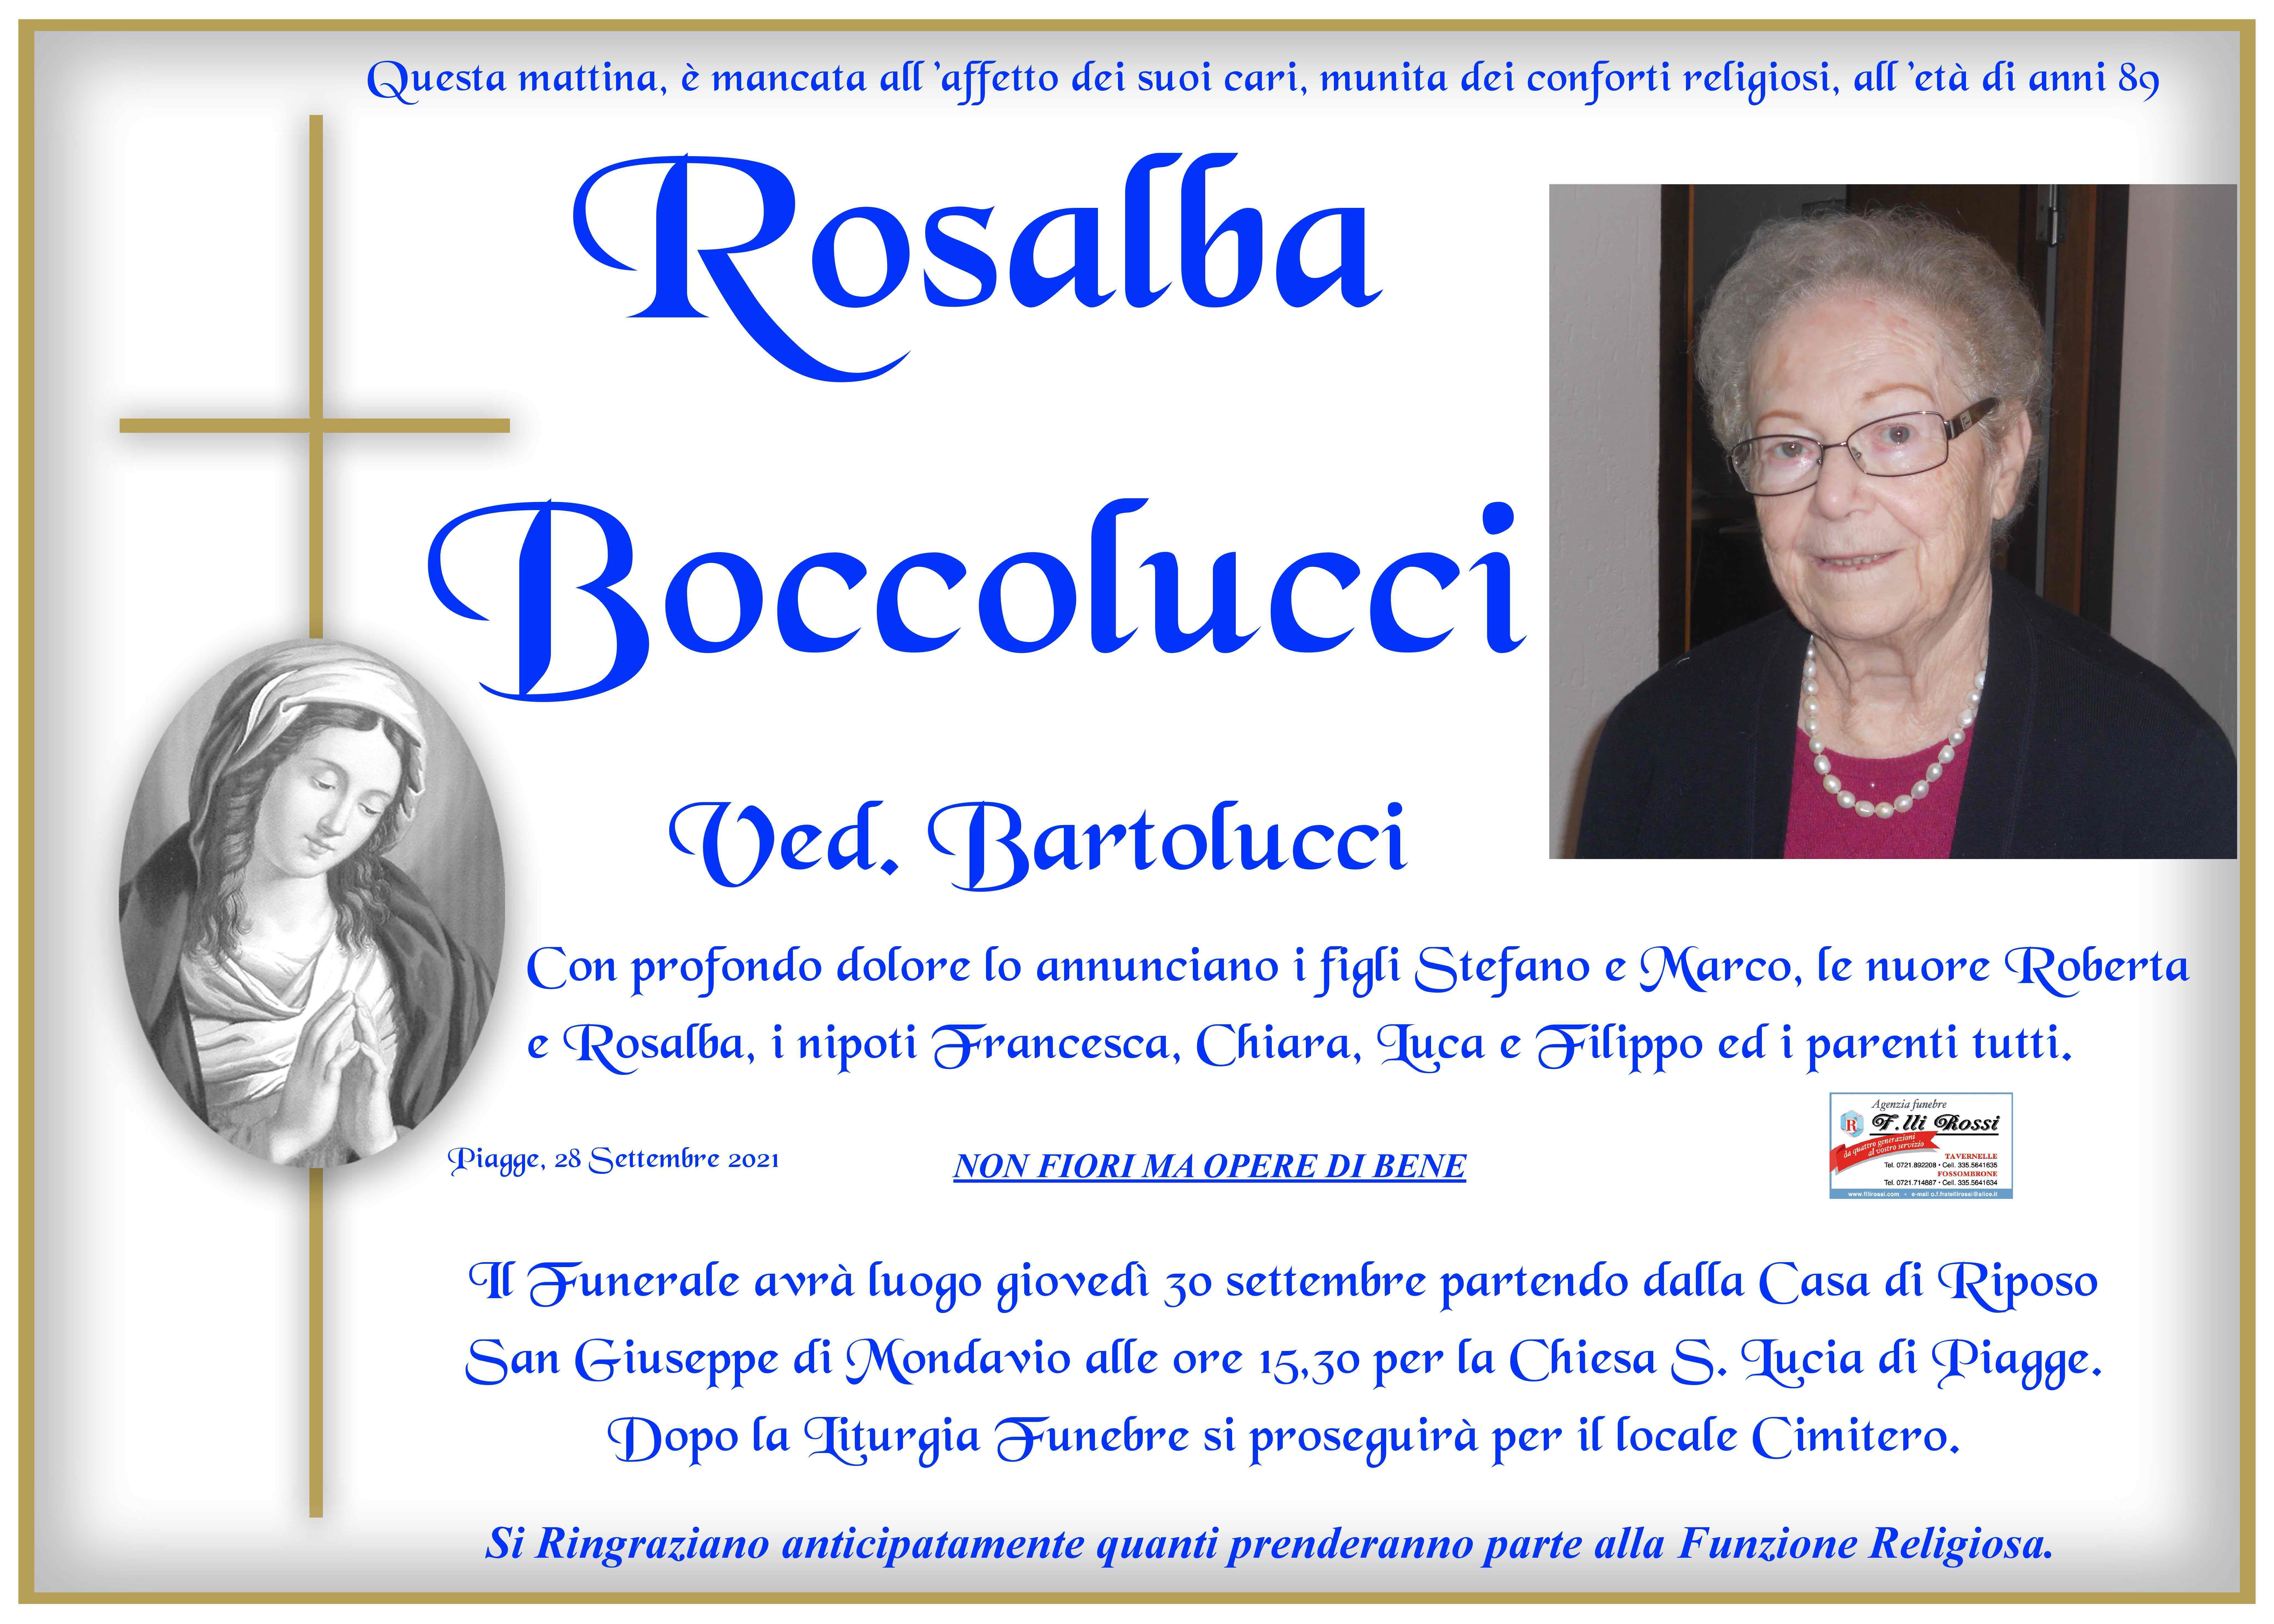 Rosalba Boccolucci